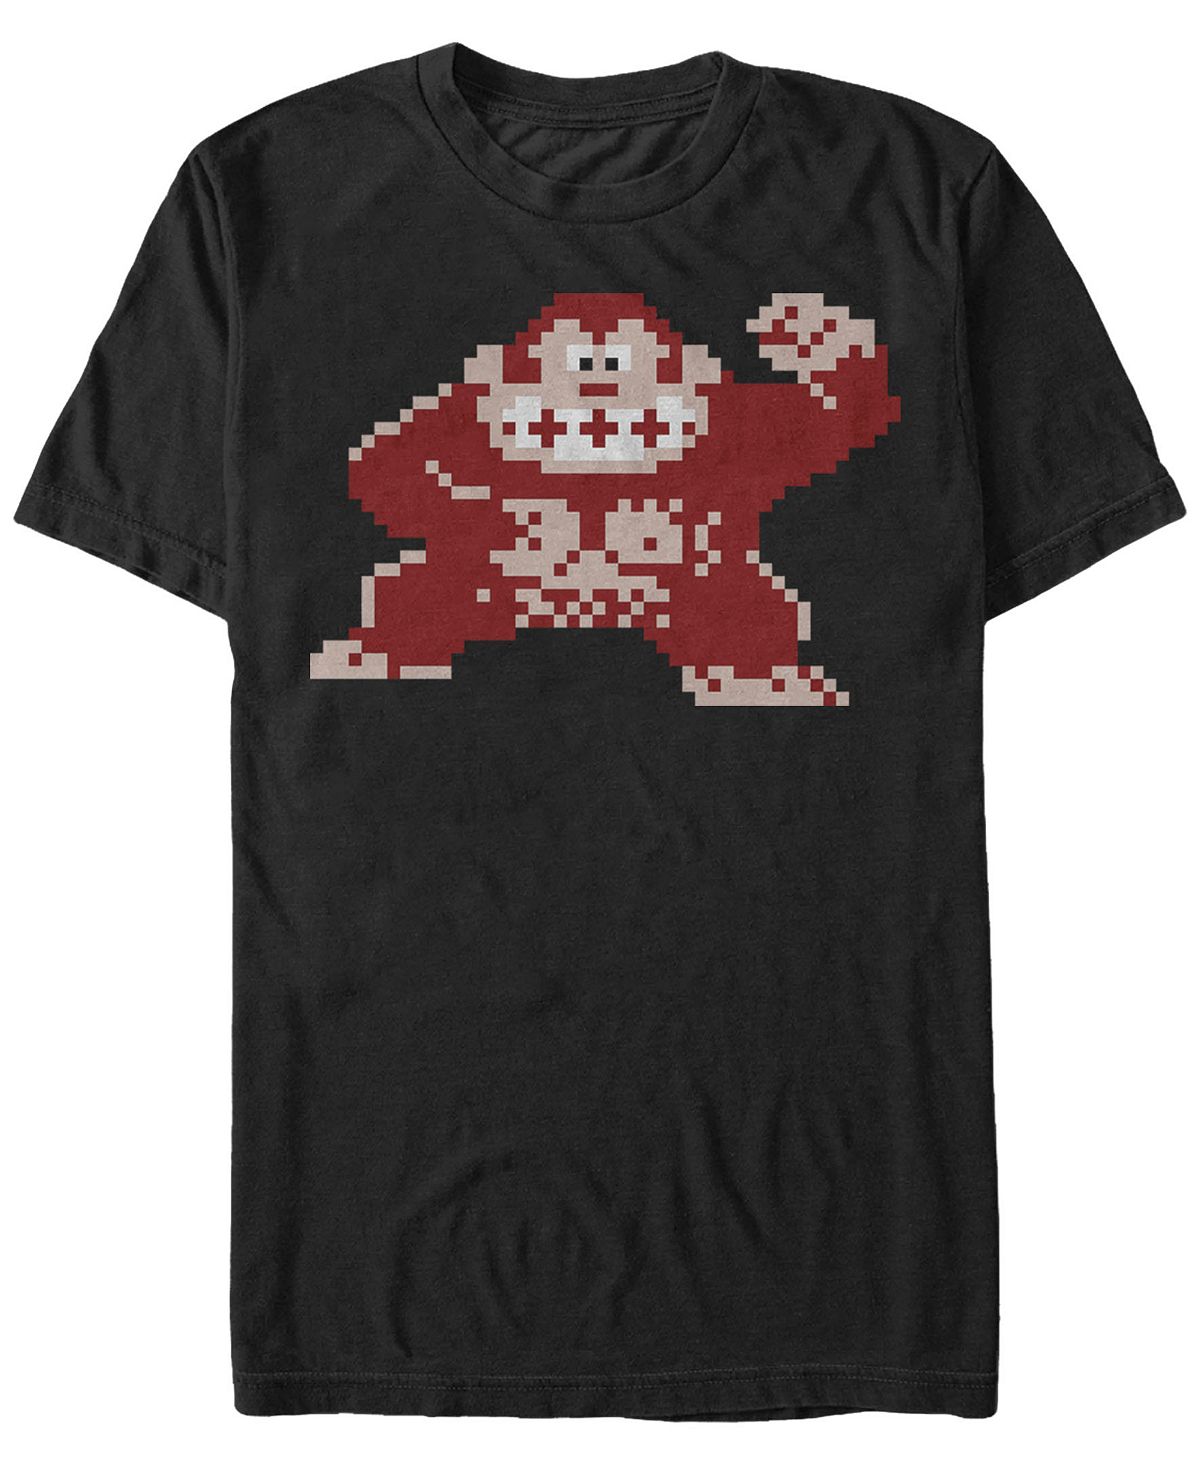 Мужская футболка с коротким рукавом donkey kong classic с пиксельным изображением kong nintendo Fifth Sun, черный